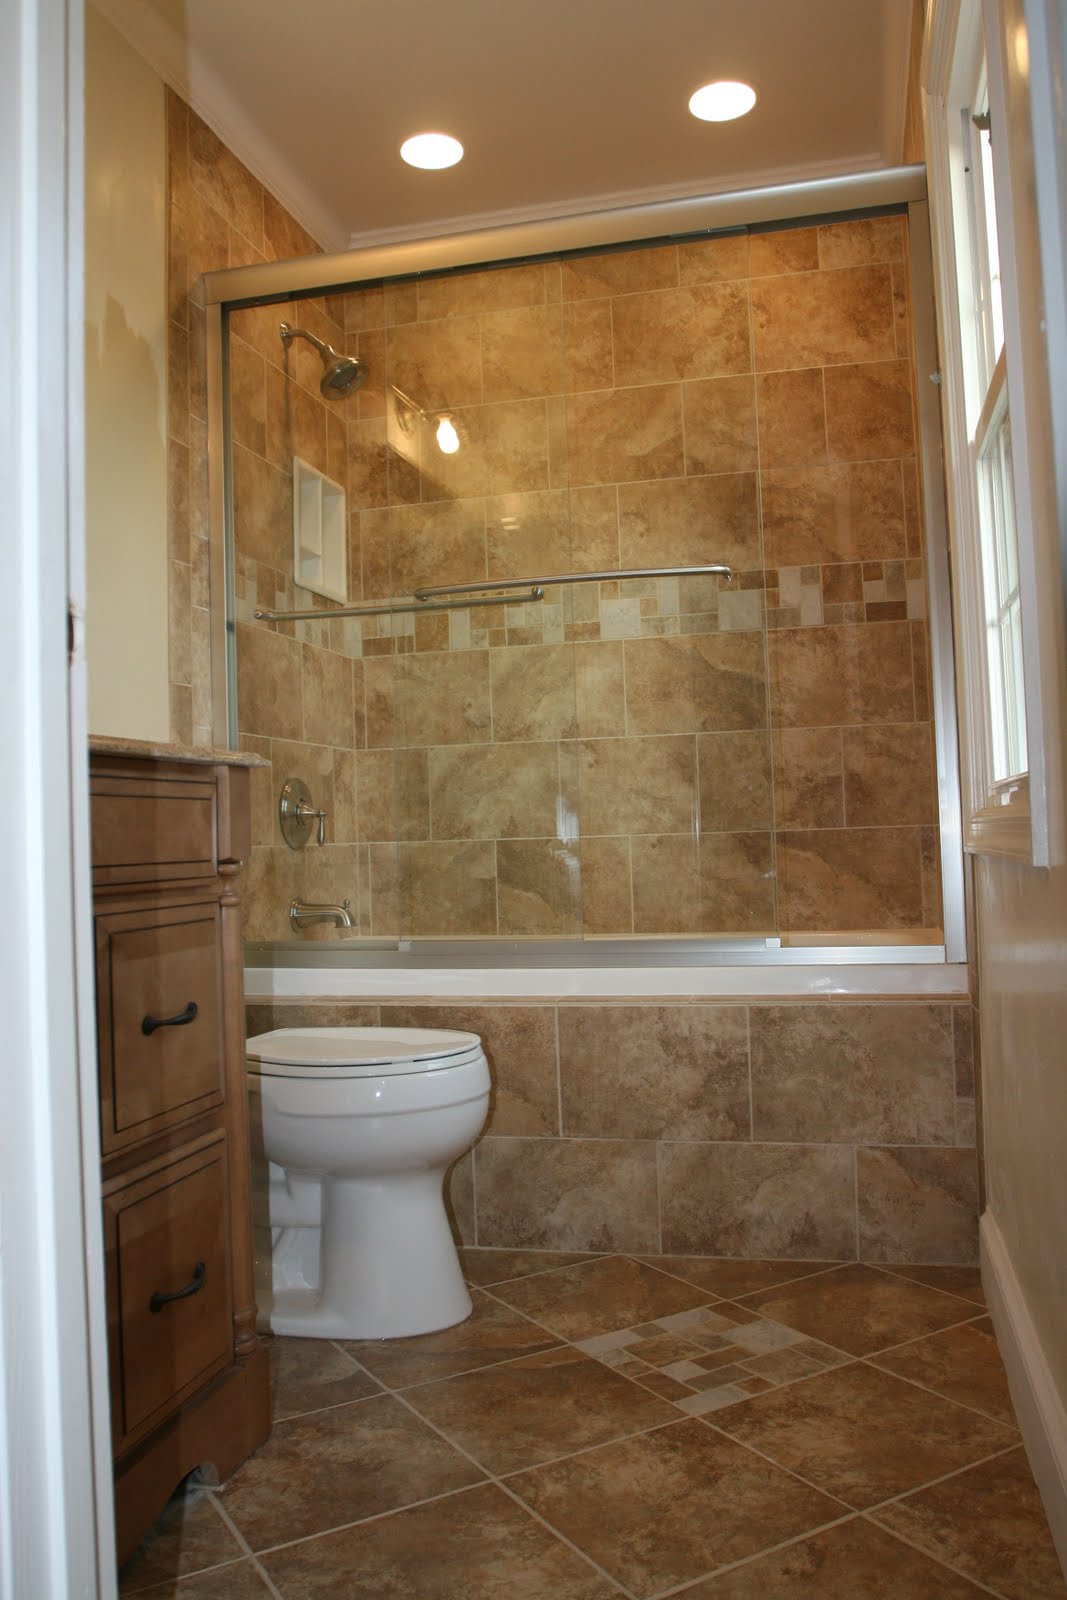  Bathroom  Remodeling  Design Ideas  Tile  Shower  Niches 